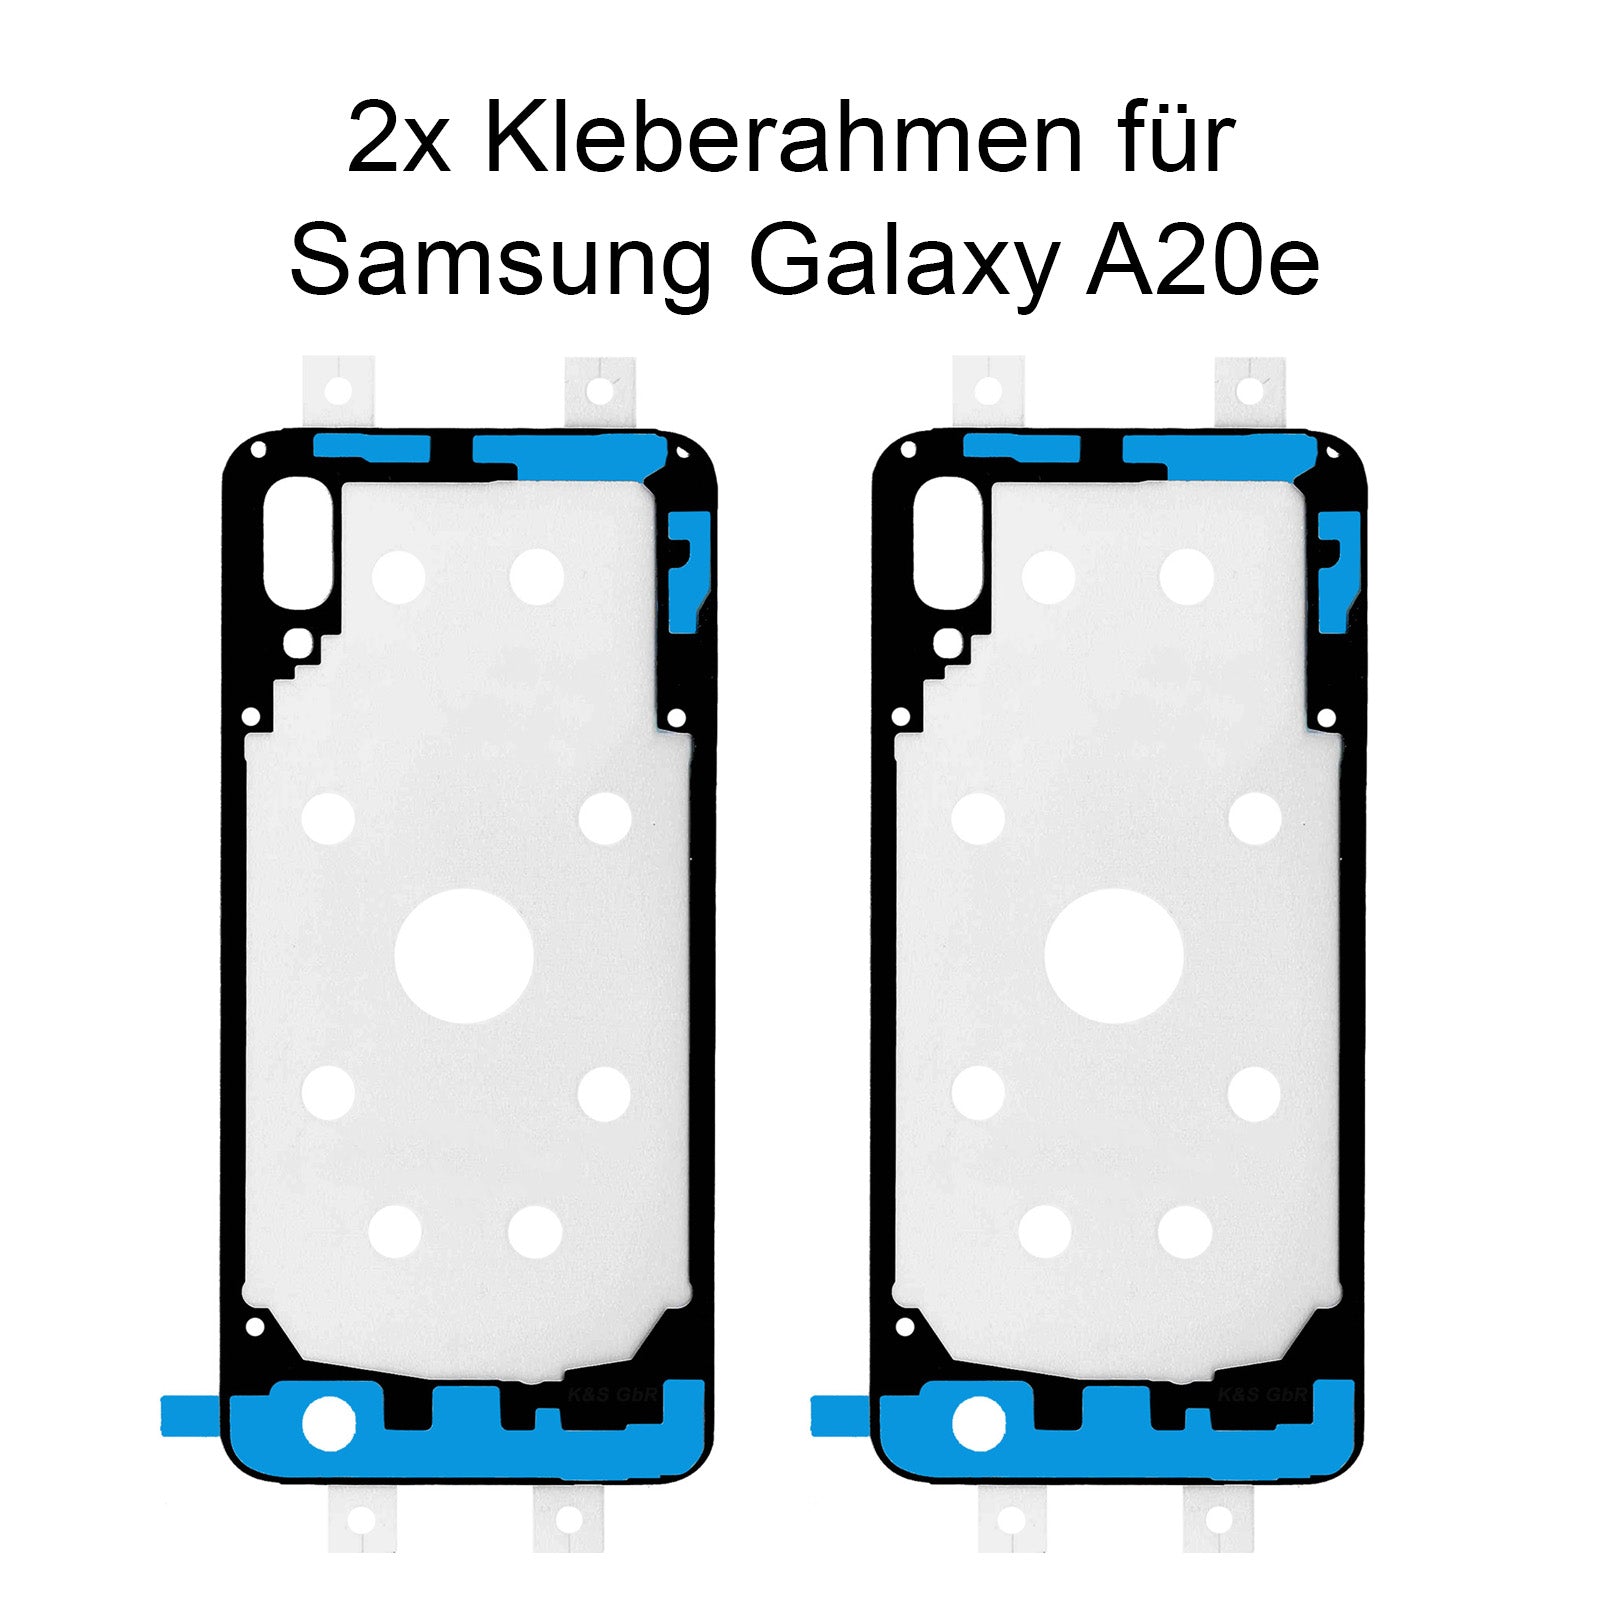 2x Kleberahmen für das Samsung Galaxy A20e, SM-A202. Klebepad, Adhesive Wasser Dichtung, im Dinngs Onlineshop entdecken und bestellen!